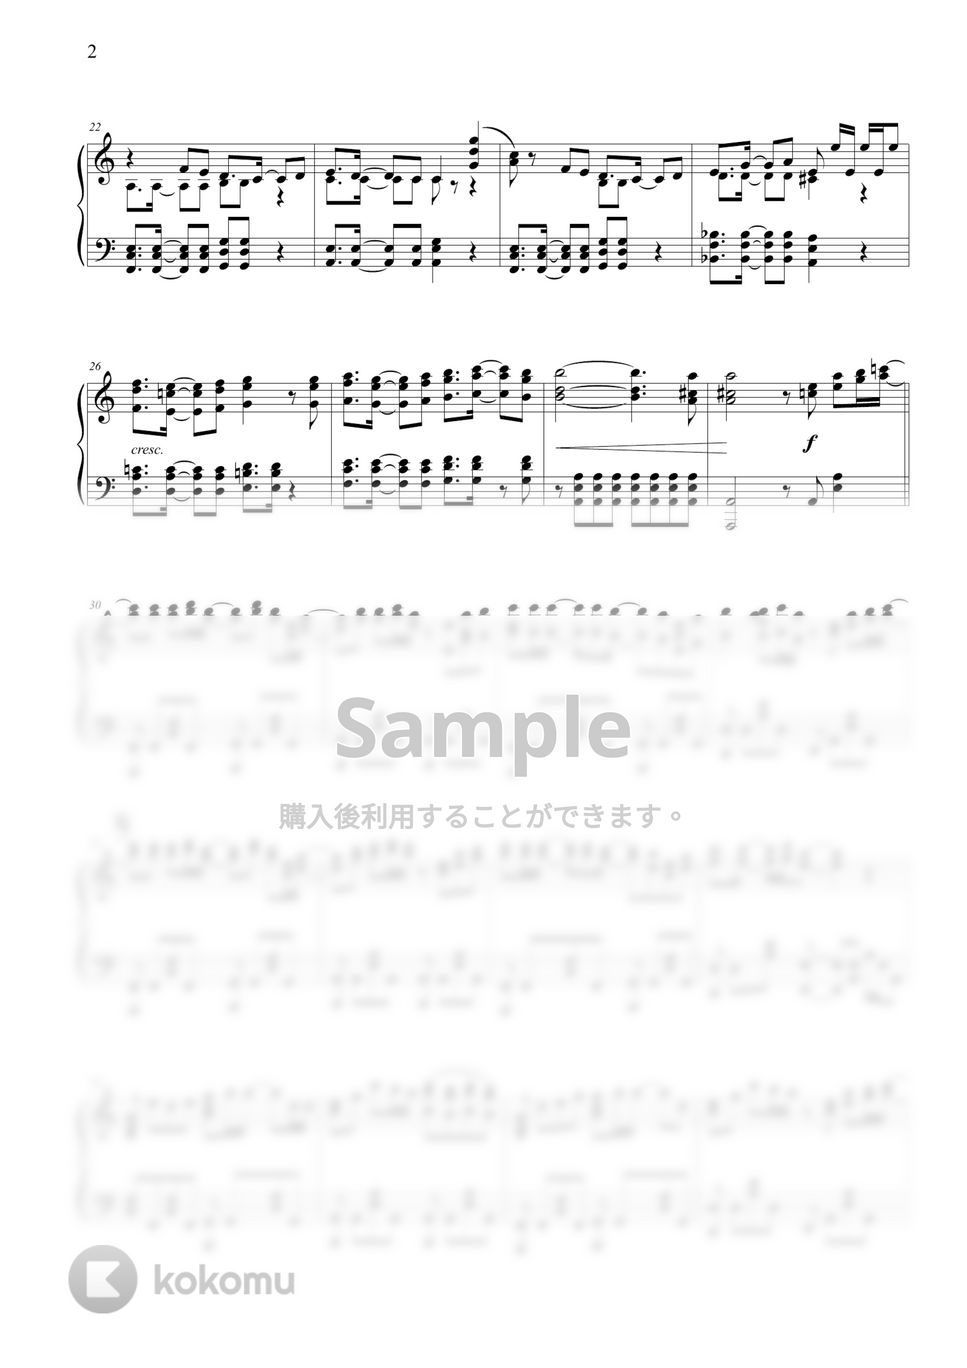 がうる・ぐら (Gawr Gura) - REFLECT by THIS IS PIANO